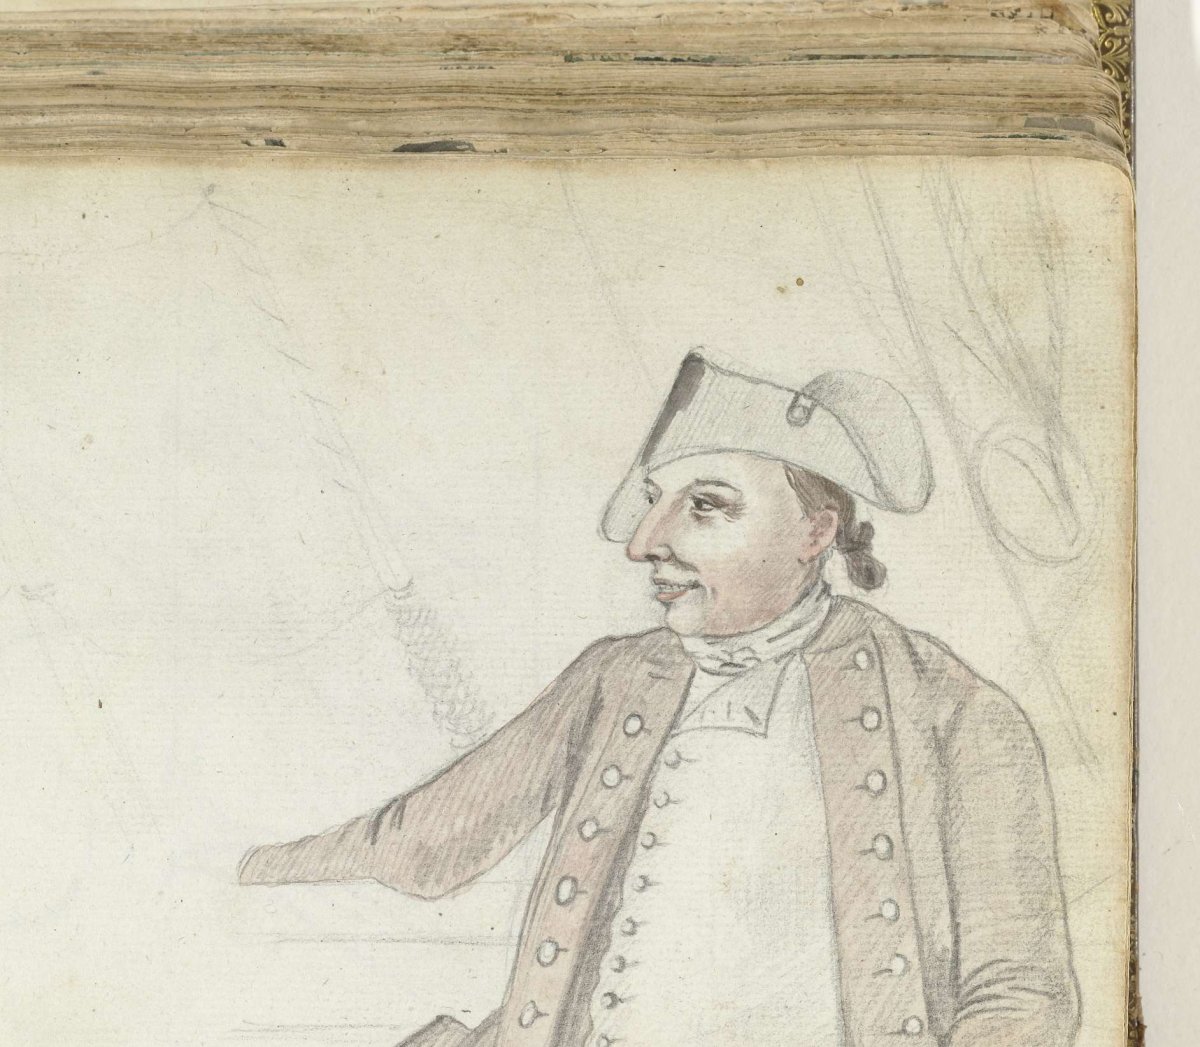 VOC officer on ship, Jan Brandes, 1778 - 1787